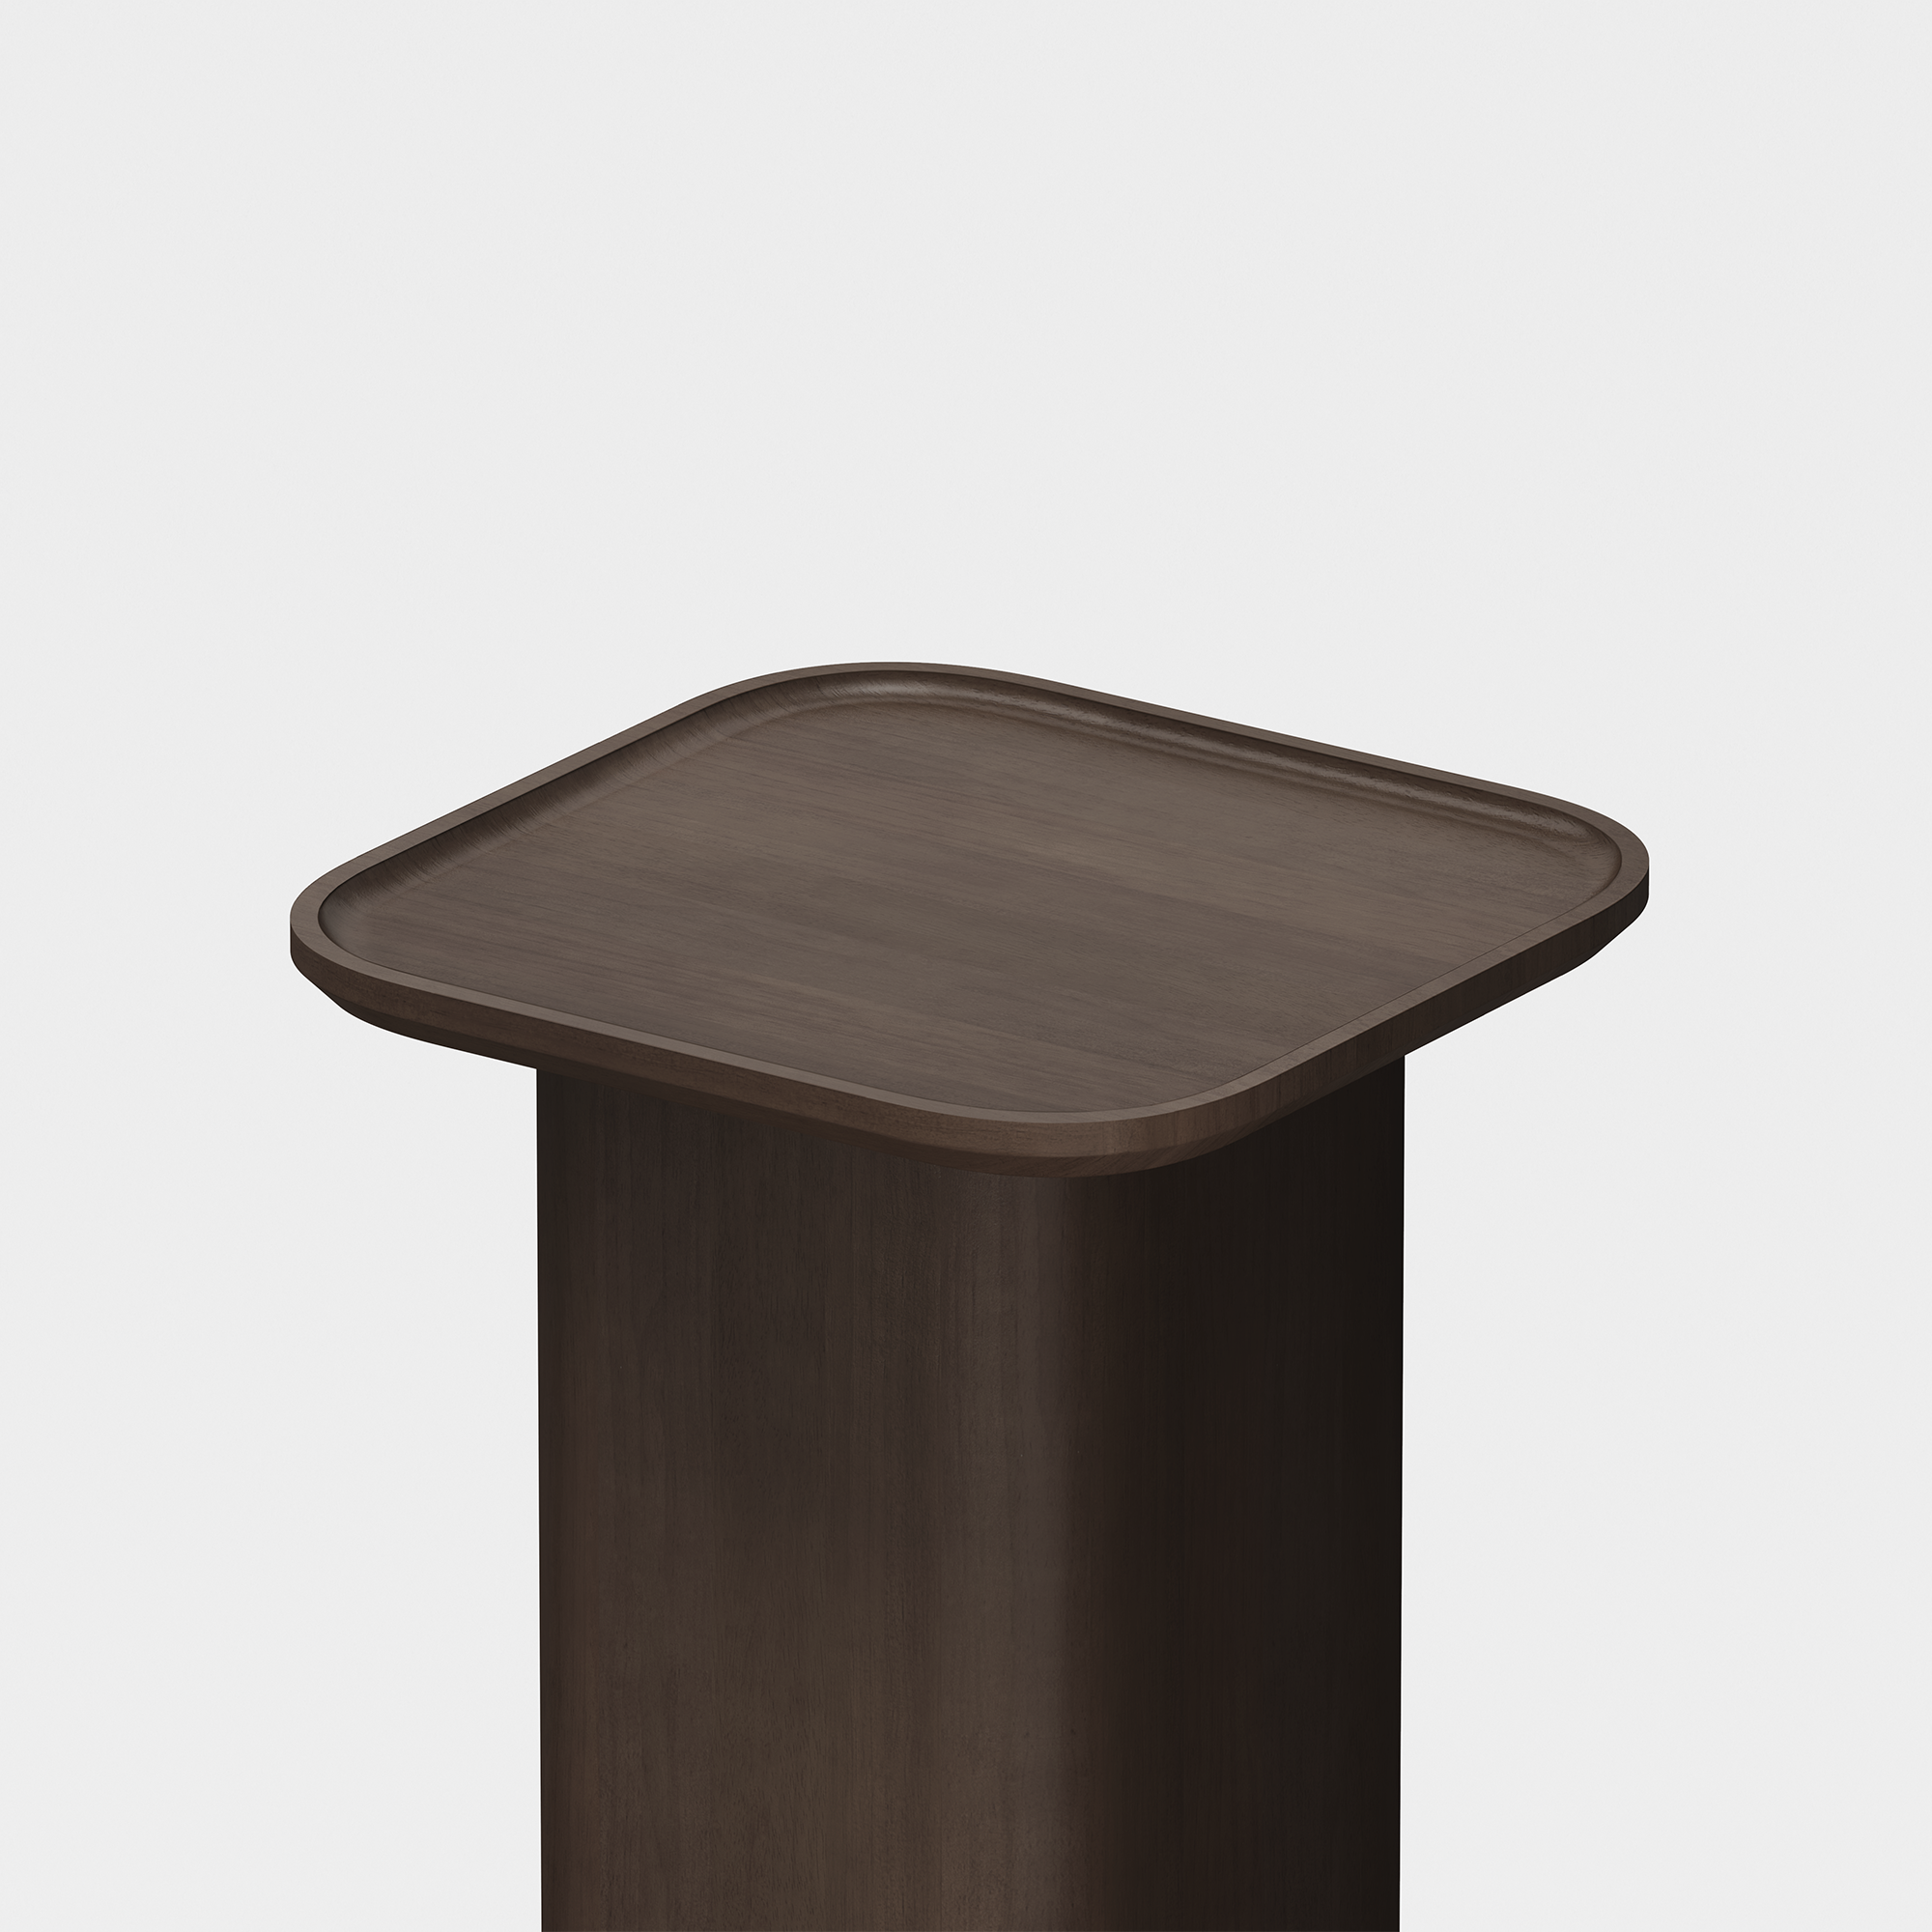 Pedestal Side Table (Espresso) - Render - Top